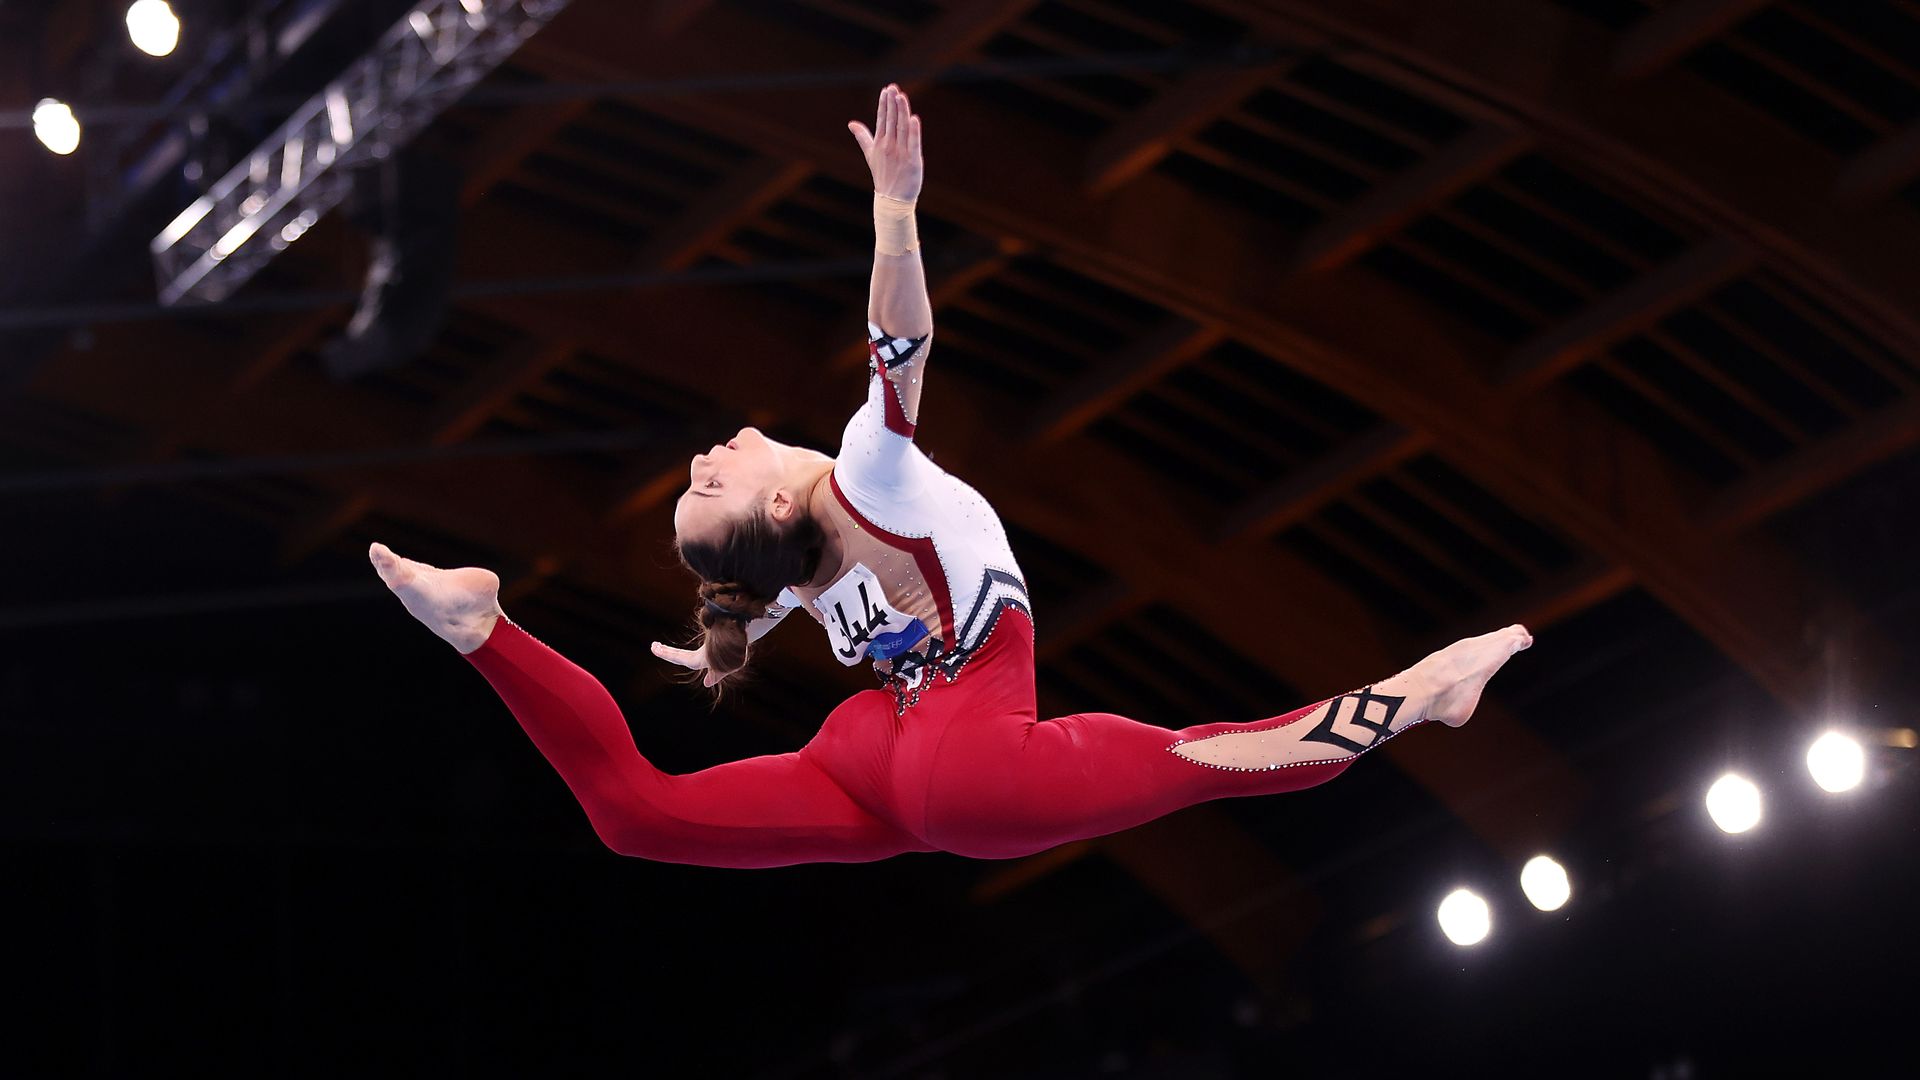 A gymnast in a full-body unitard